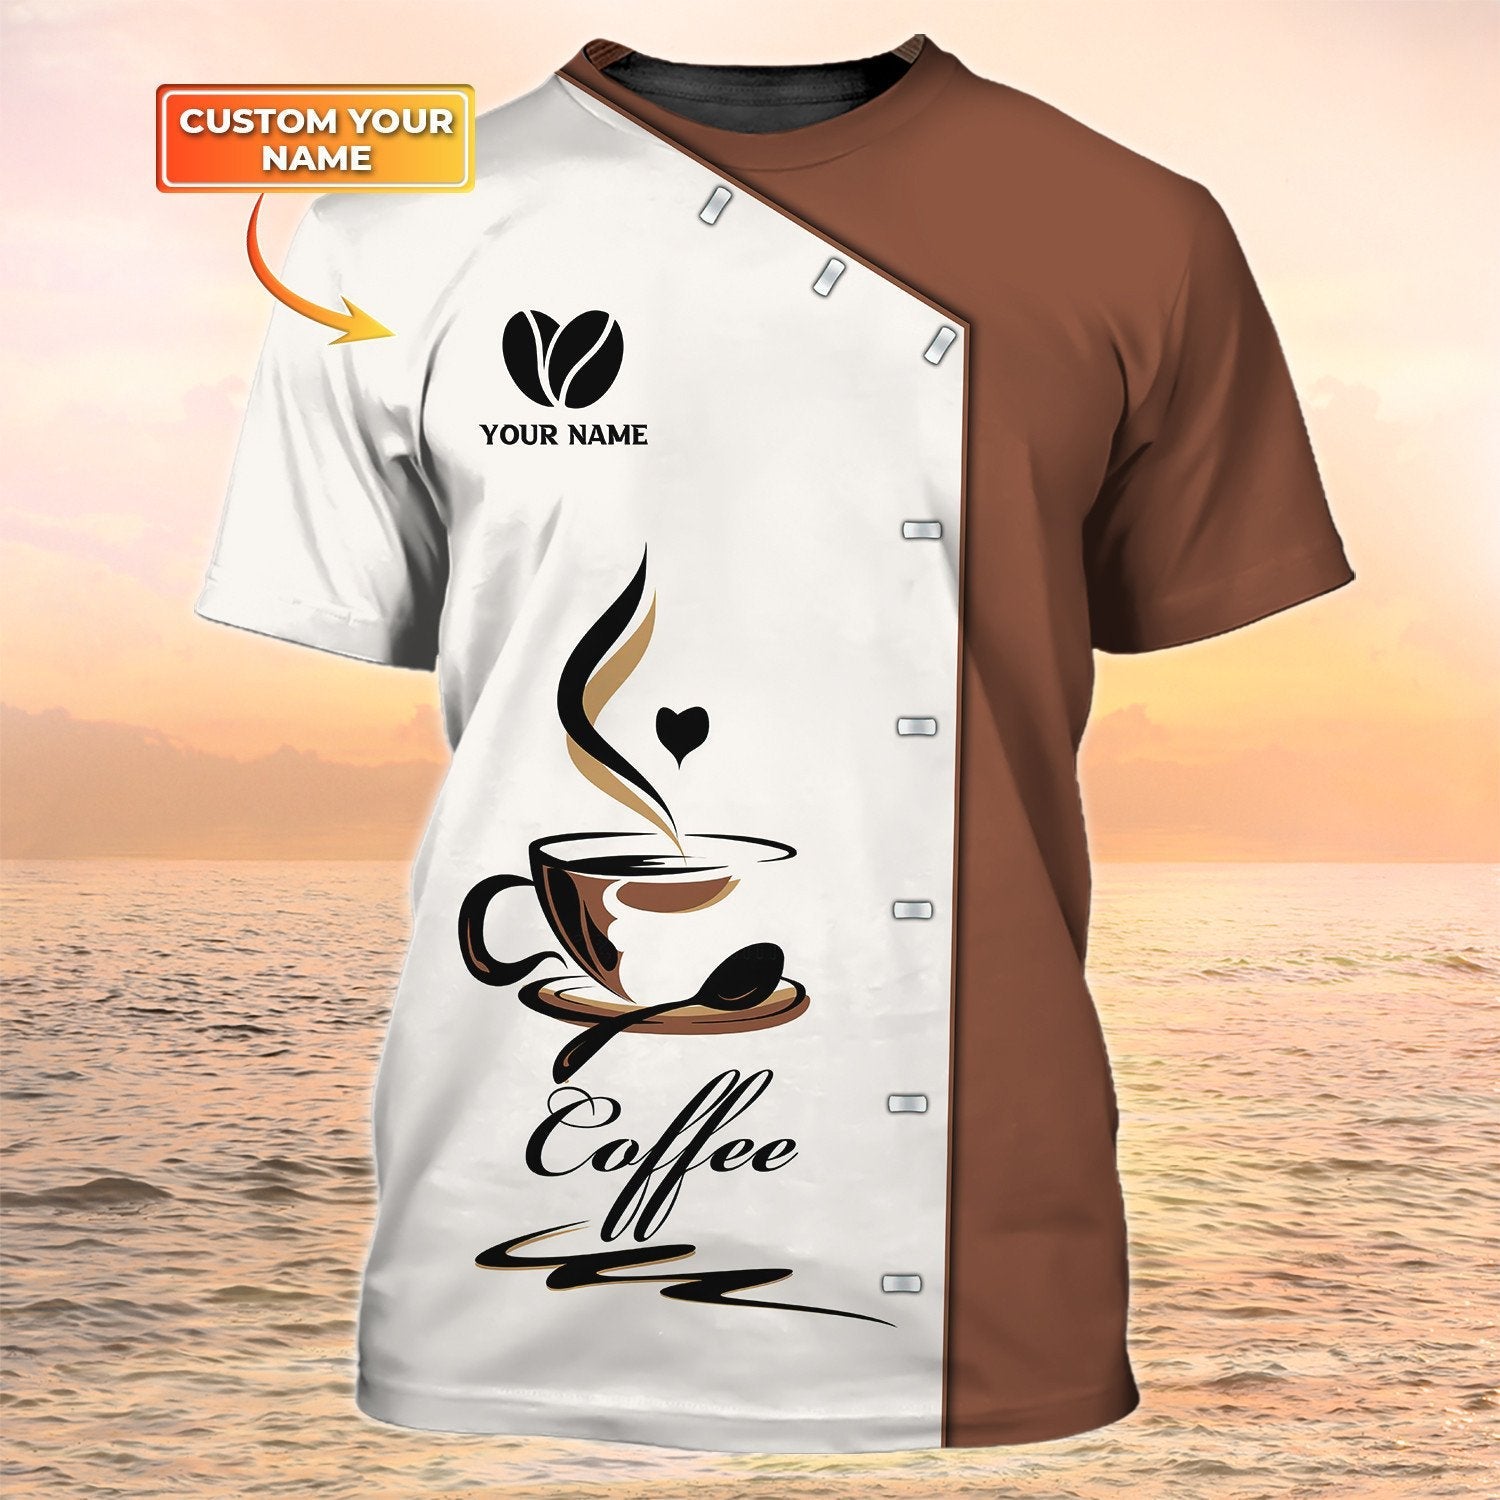 Coffee T Shirts Barista Shirt Coffee Custom Tshirt Coffee Shop Uniform